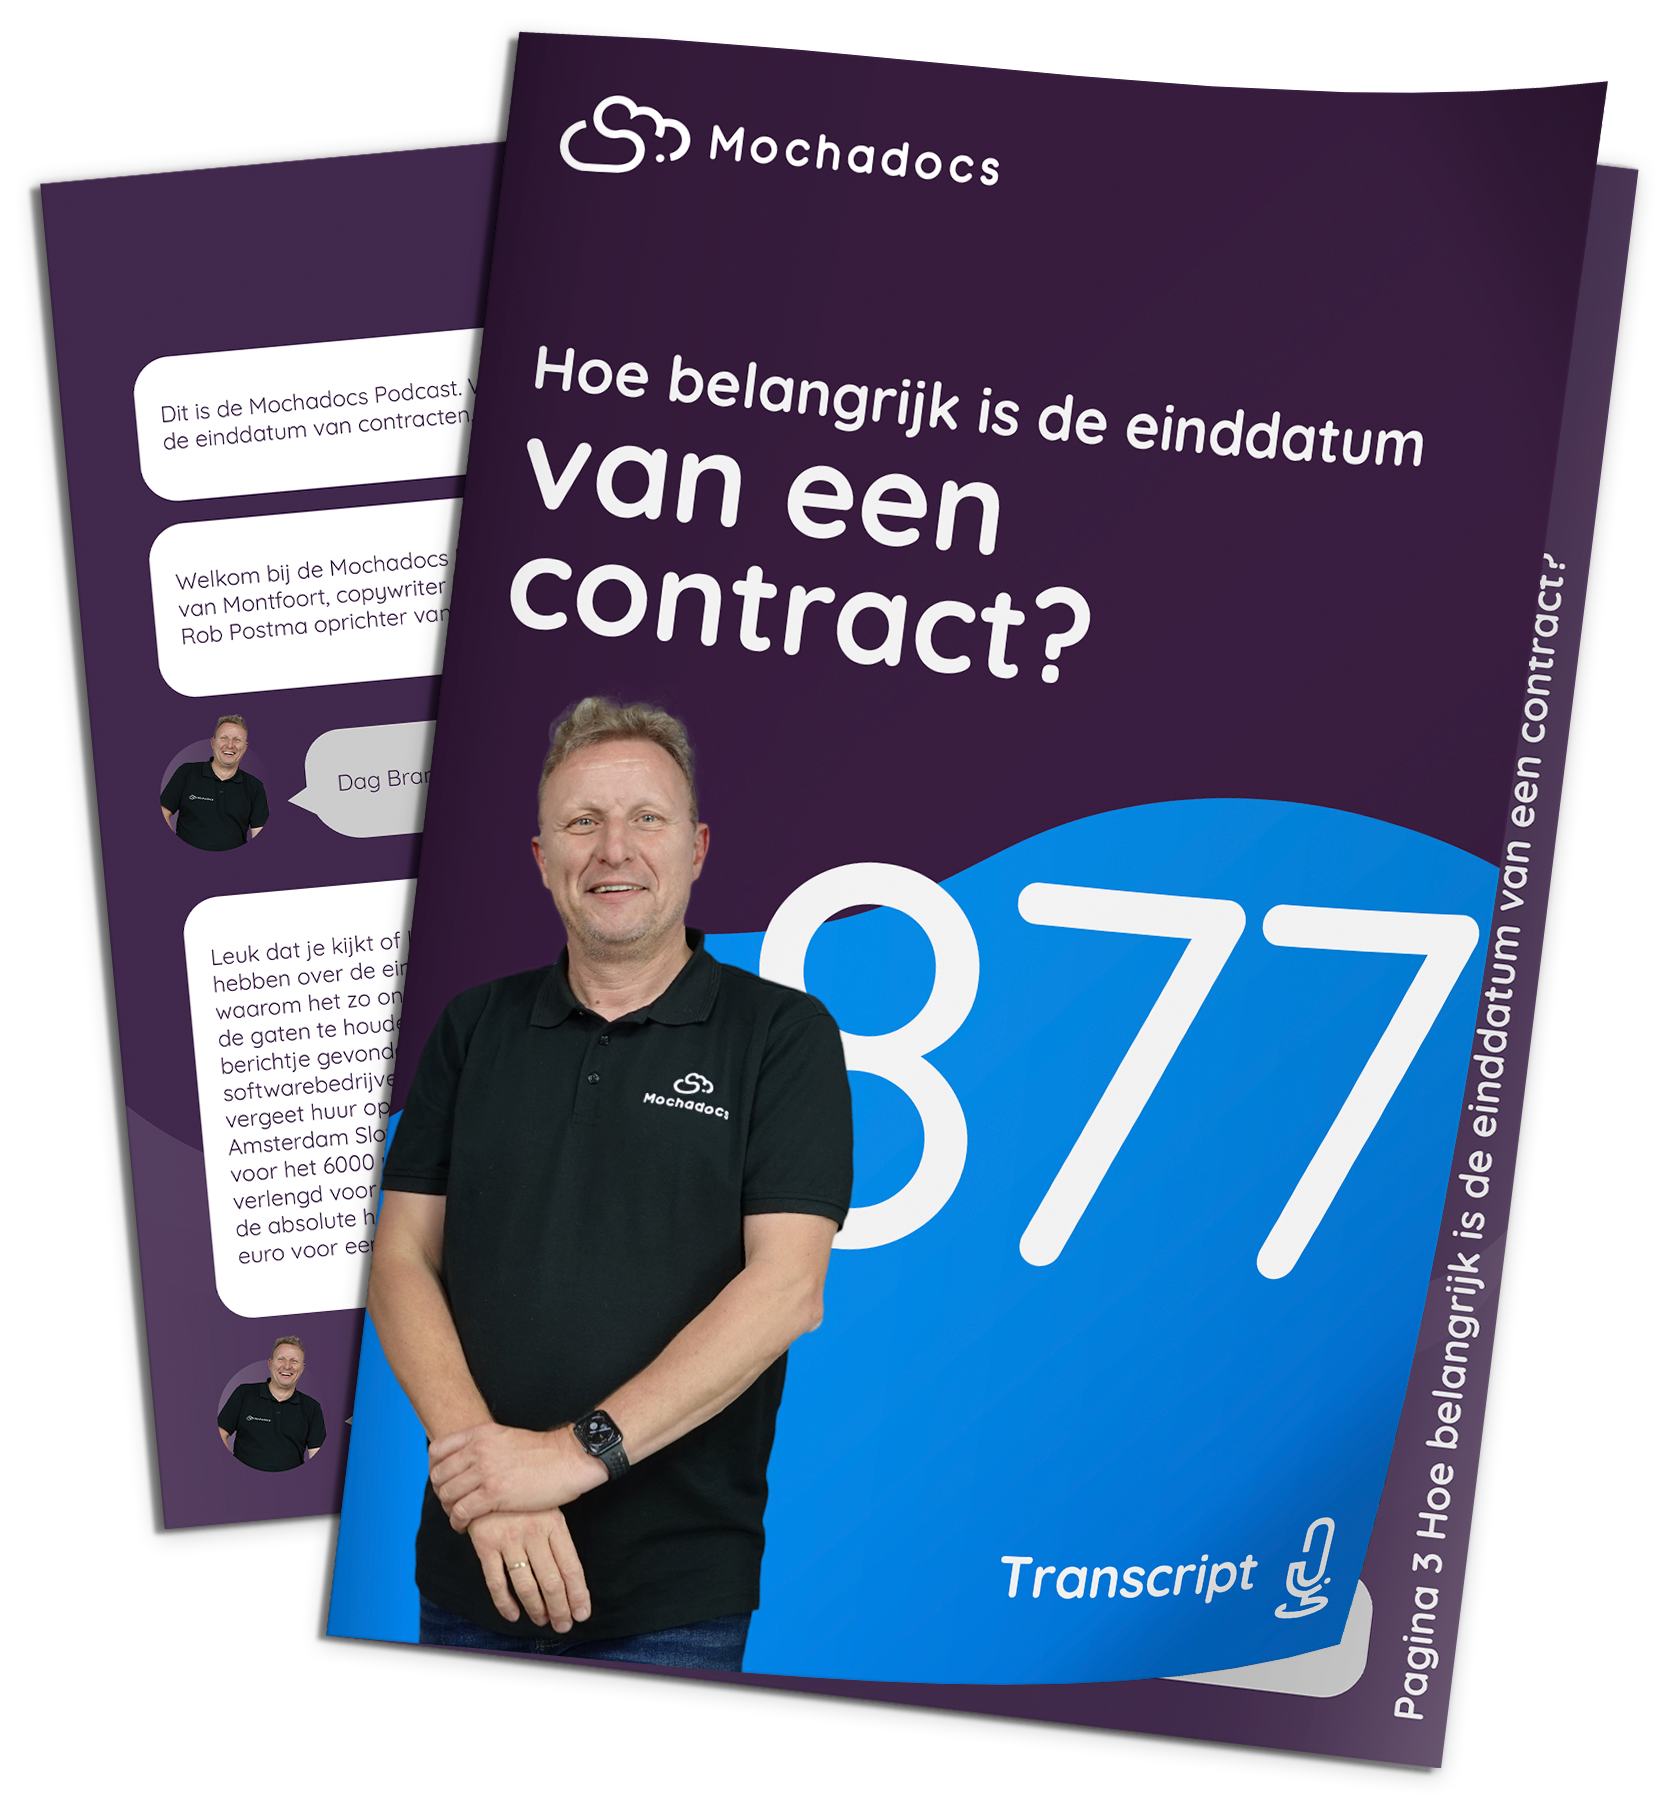 Mochadocs - Contract Management - Transcript - Hoe belangrijk is de einddatum van een contract?